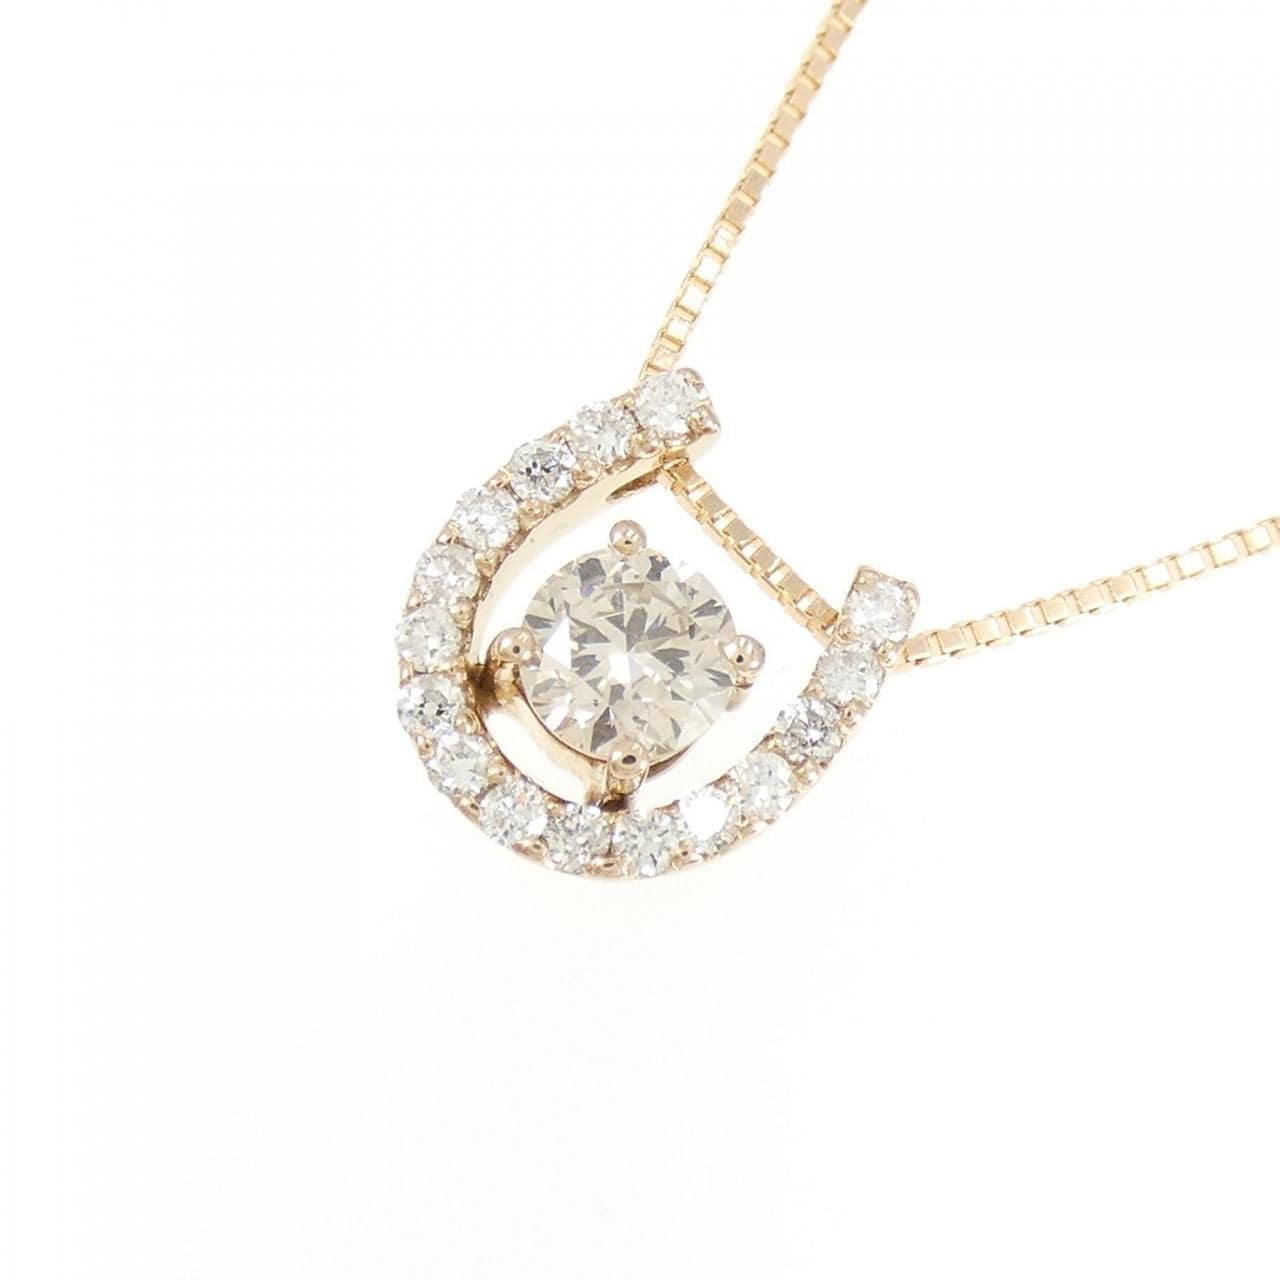 K18PG Horseshoe Diamond Necklace 0.324CT